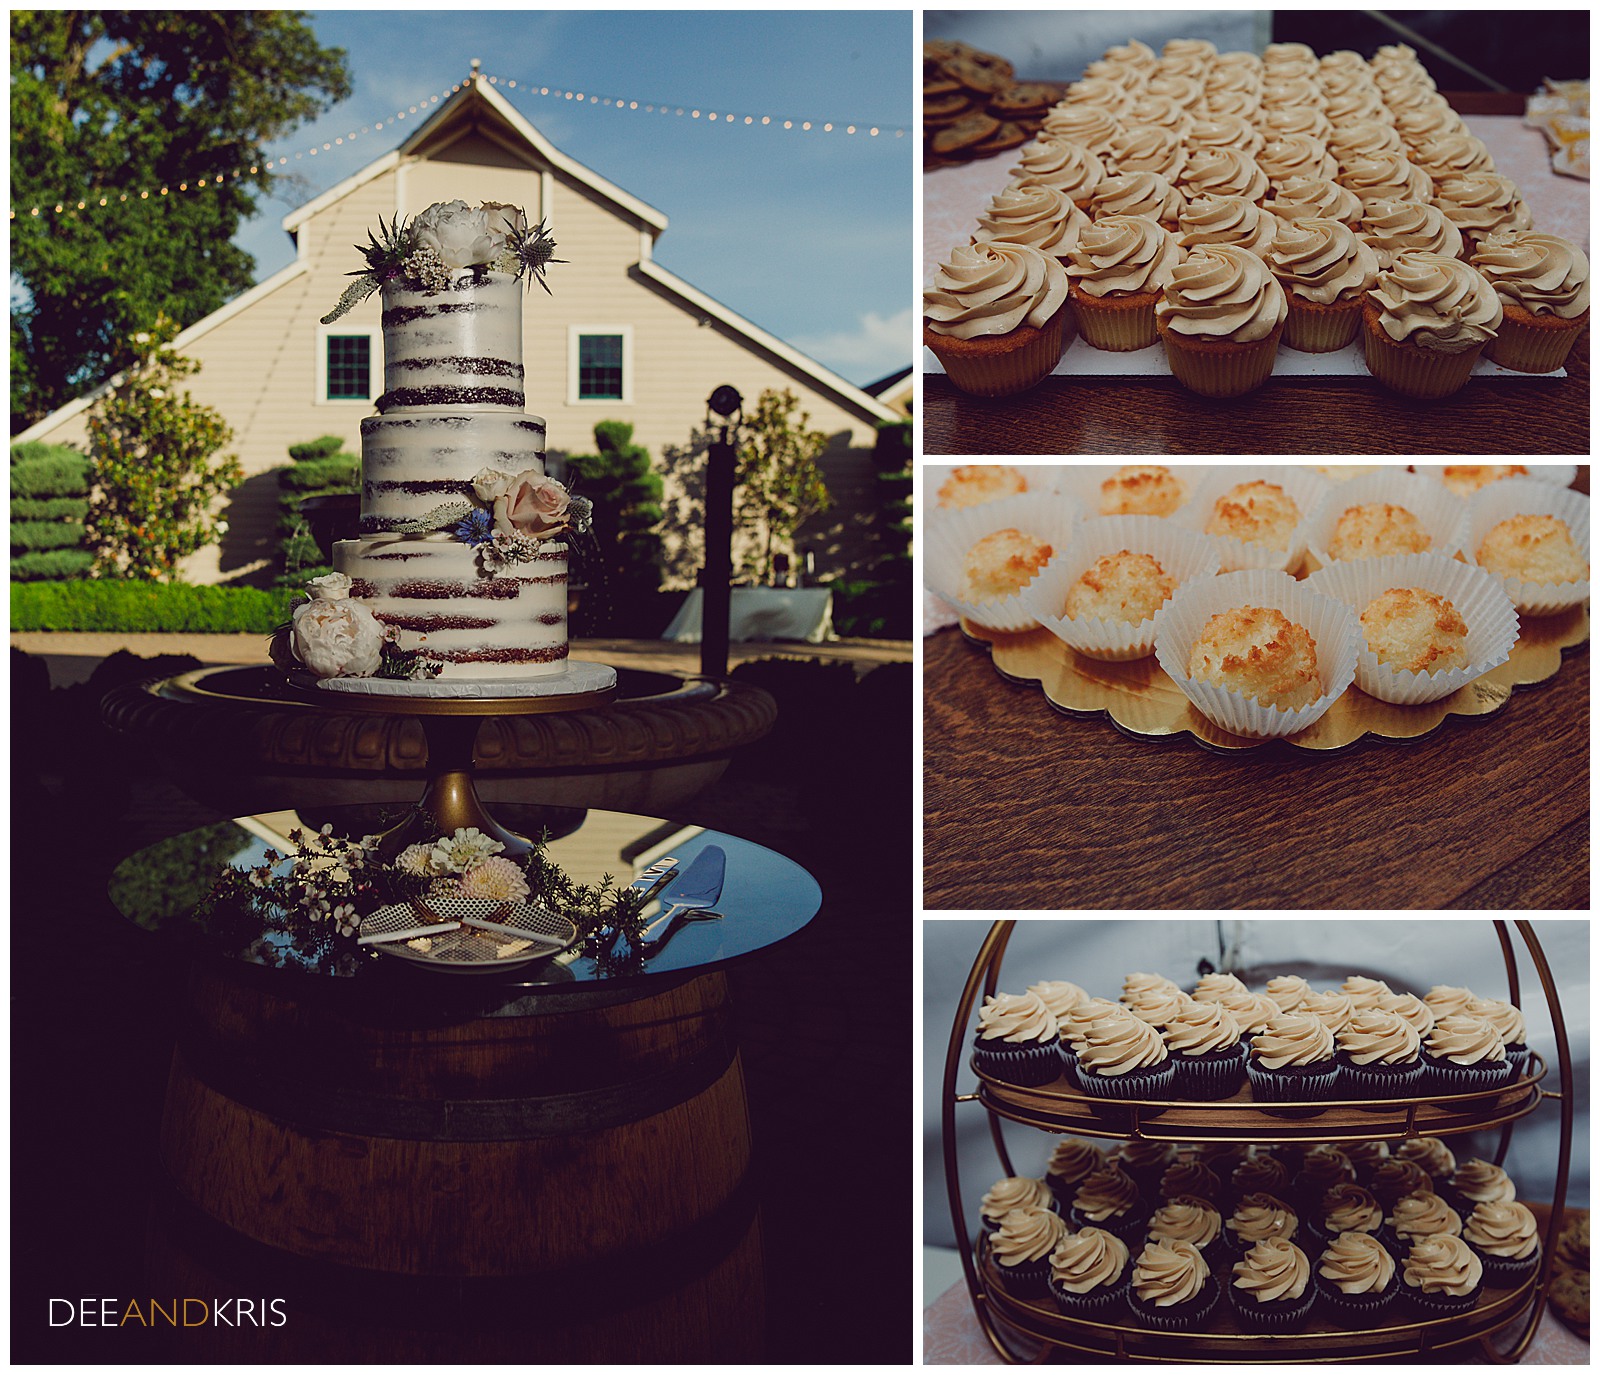 Freeport Bakery wedding cake and cupcake bar